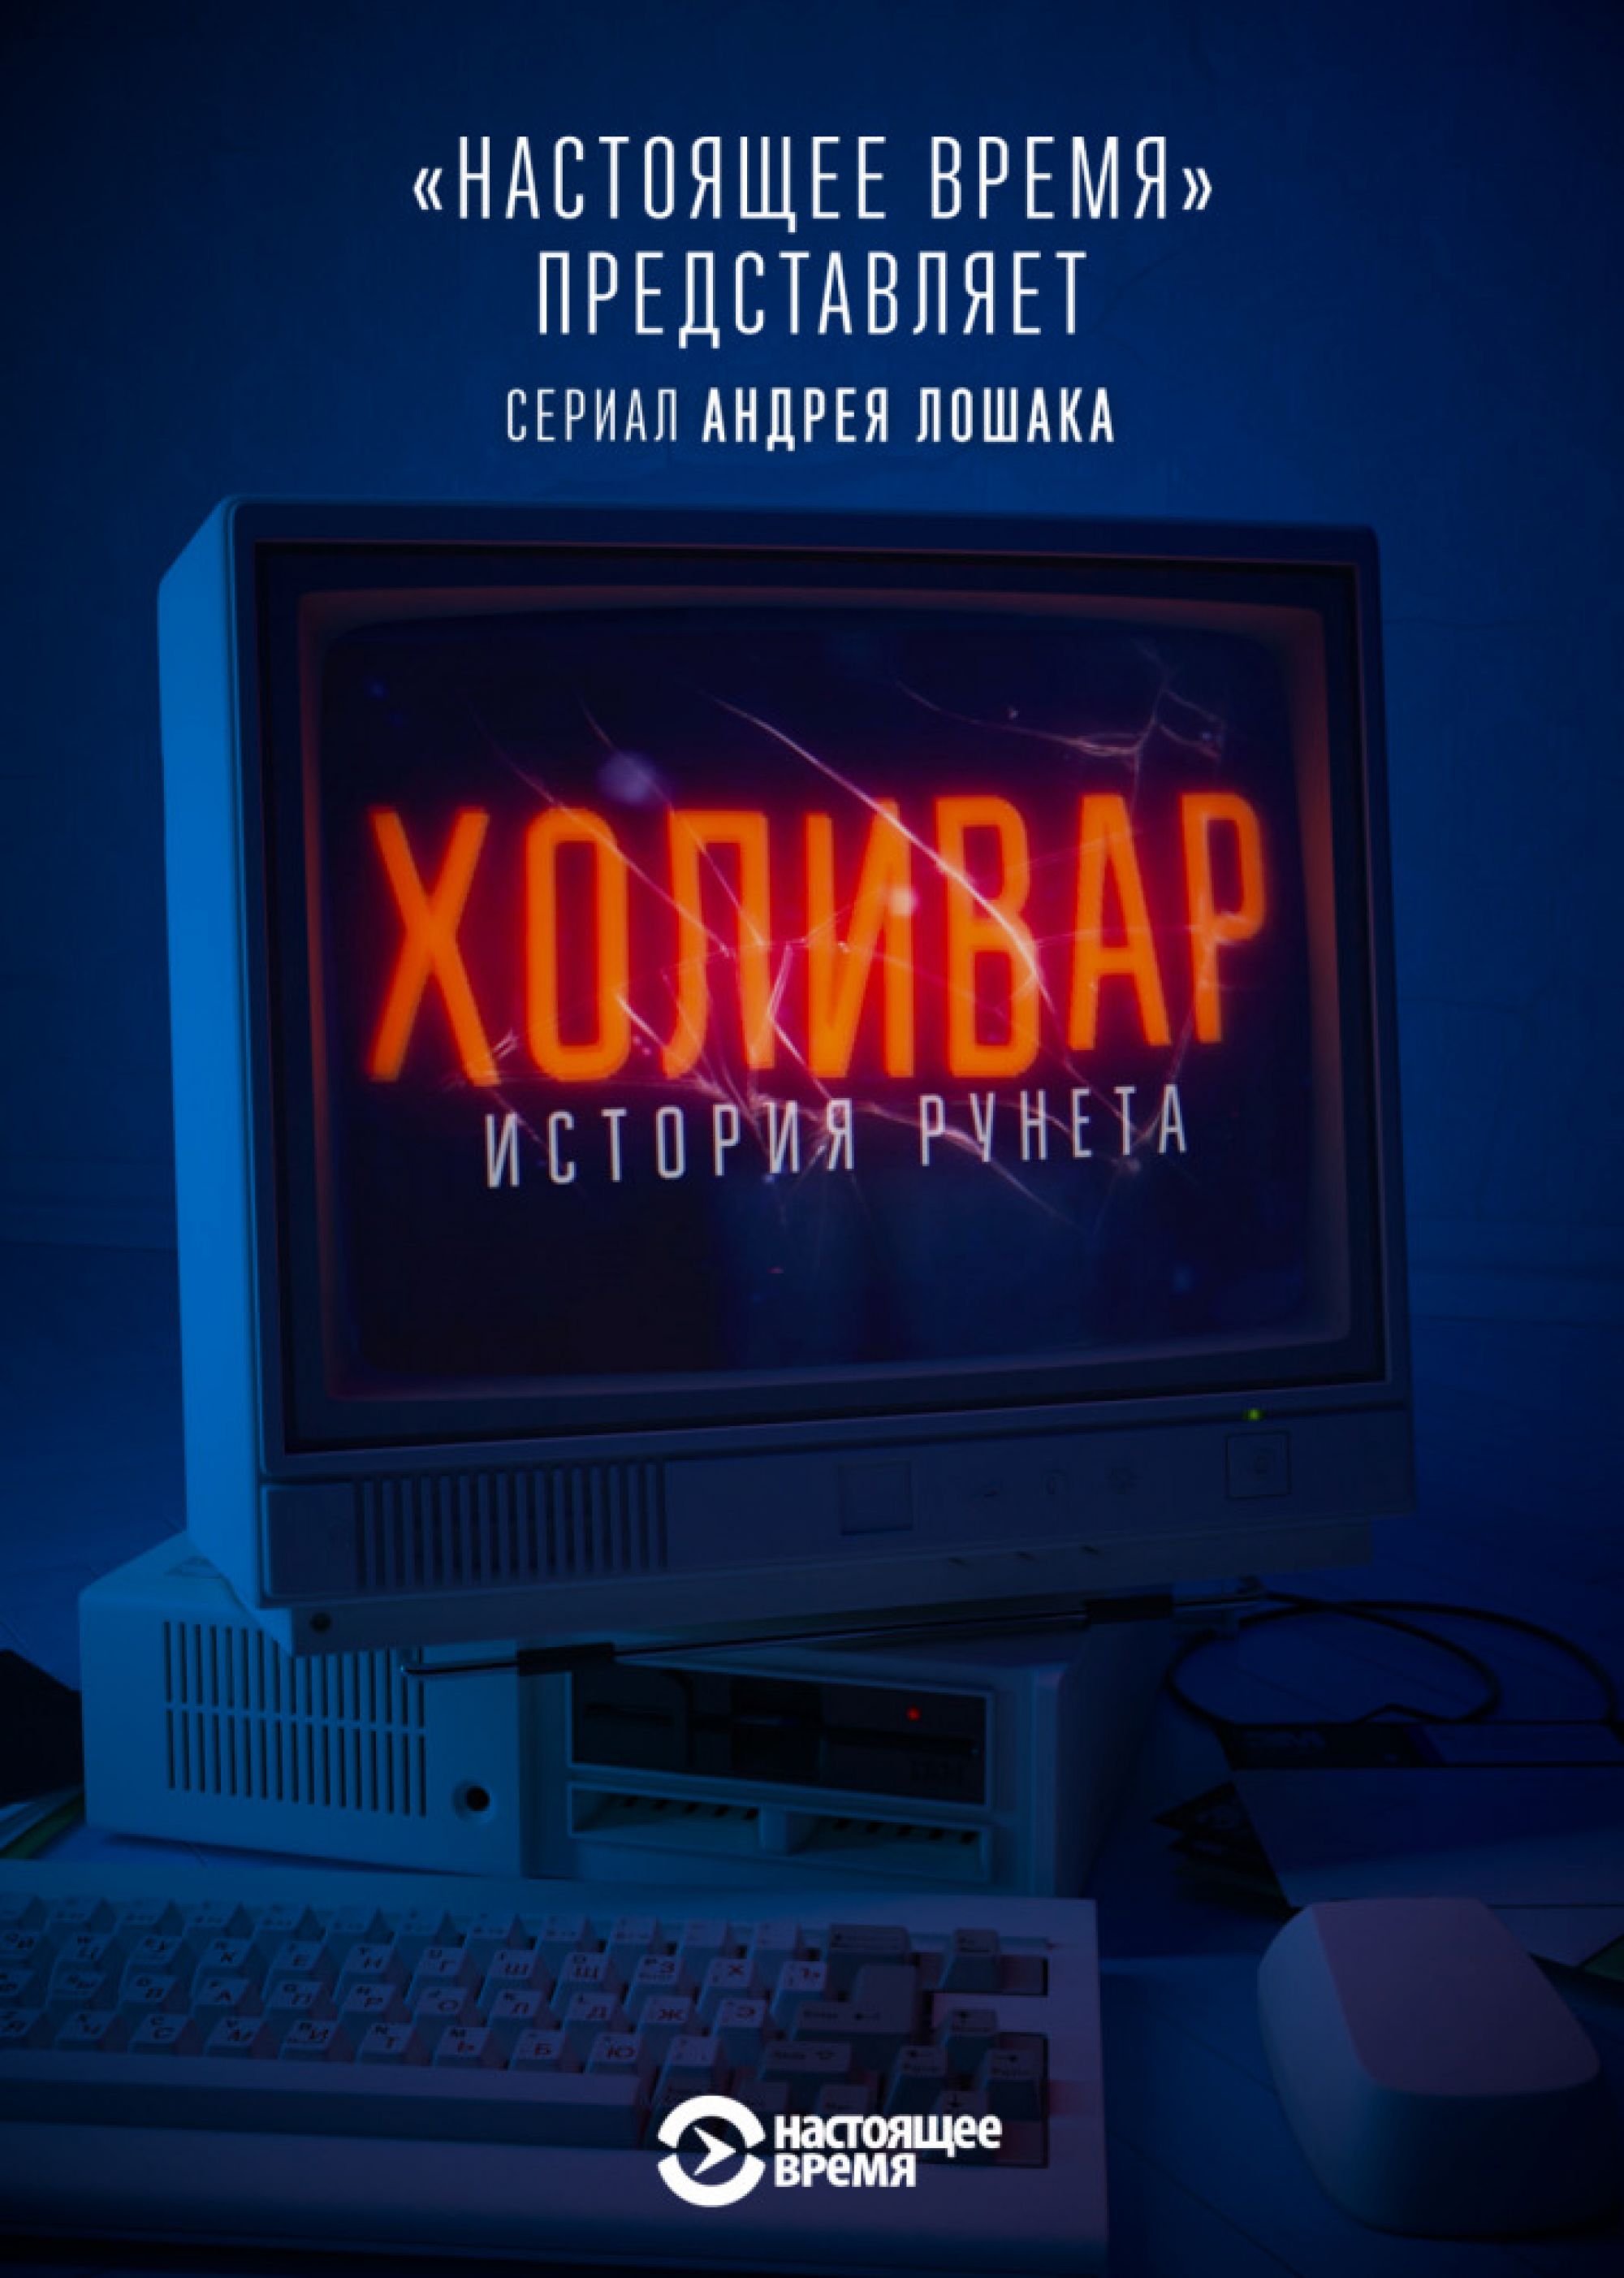 Смотри, пока не запретили: вторая серия скандального сериала "Холивар. История рунета"